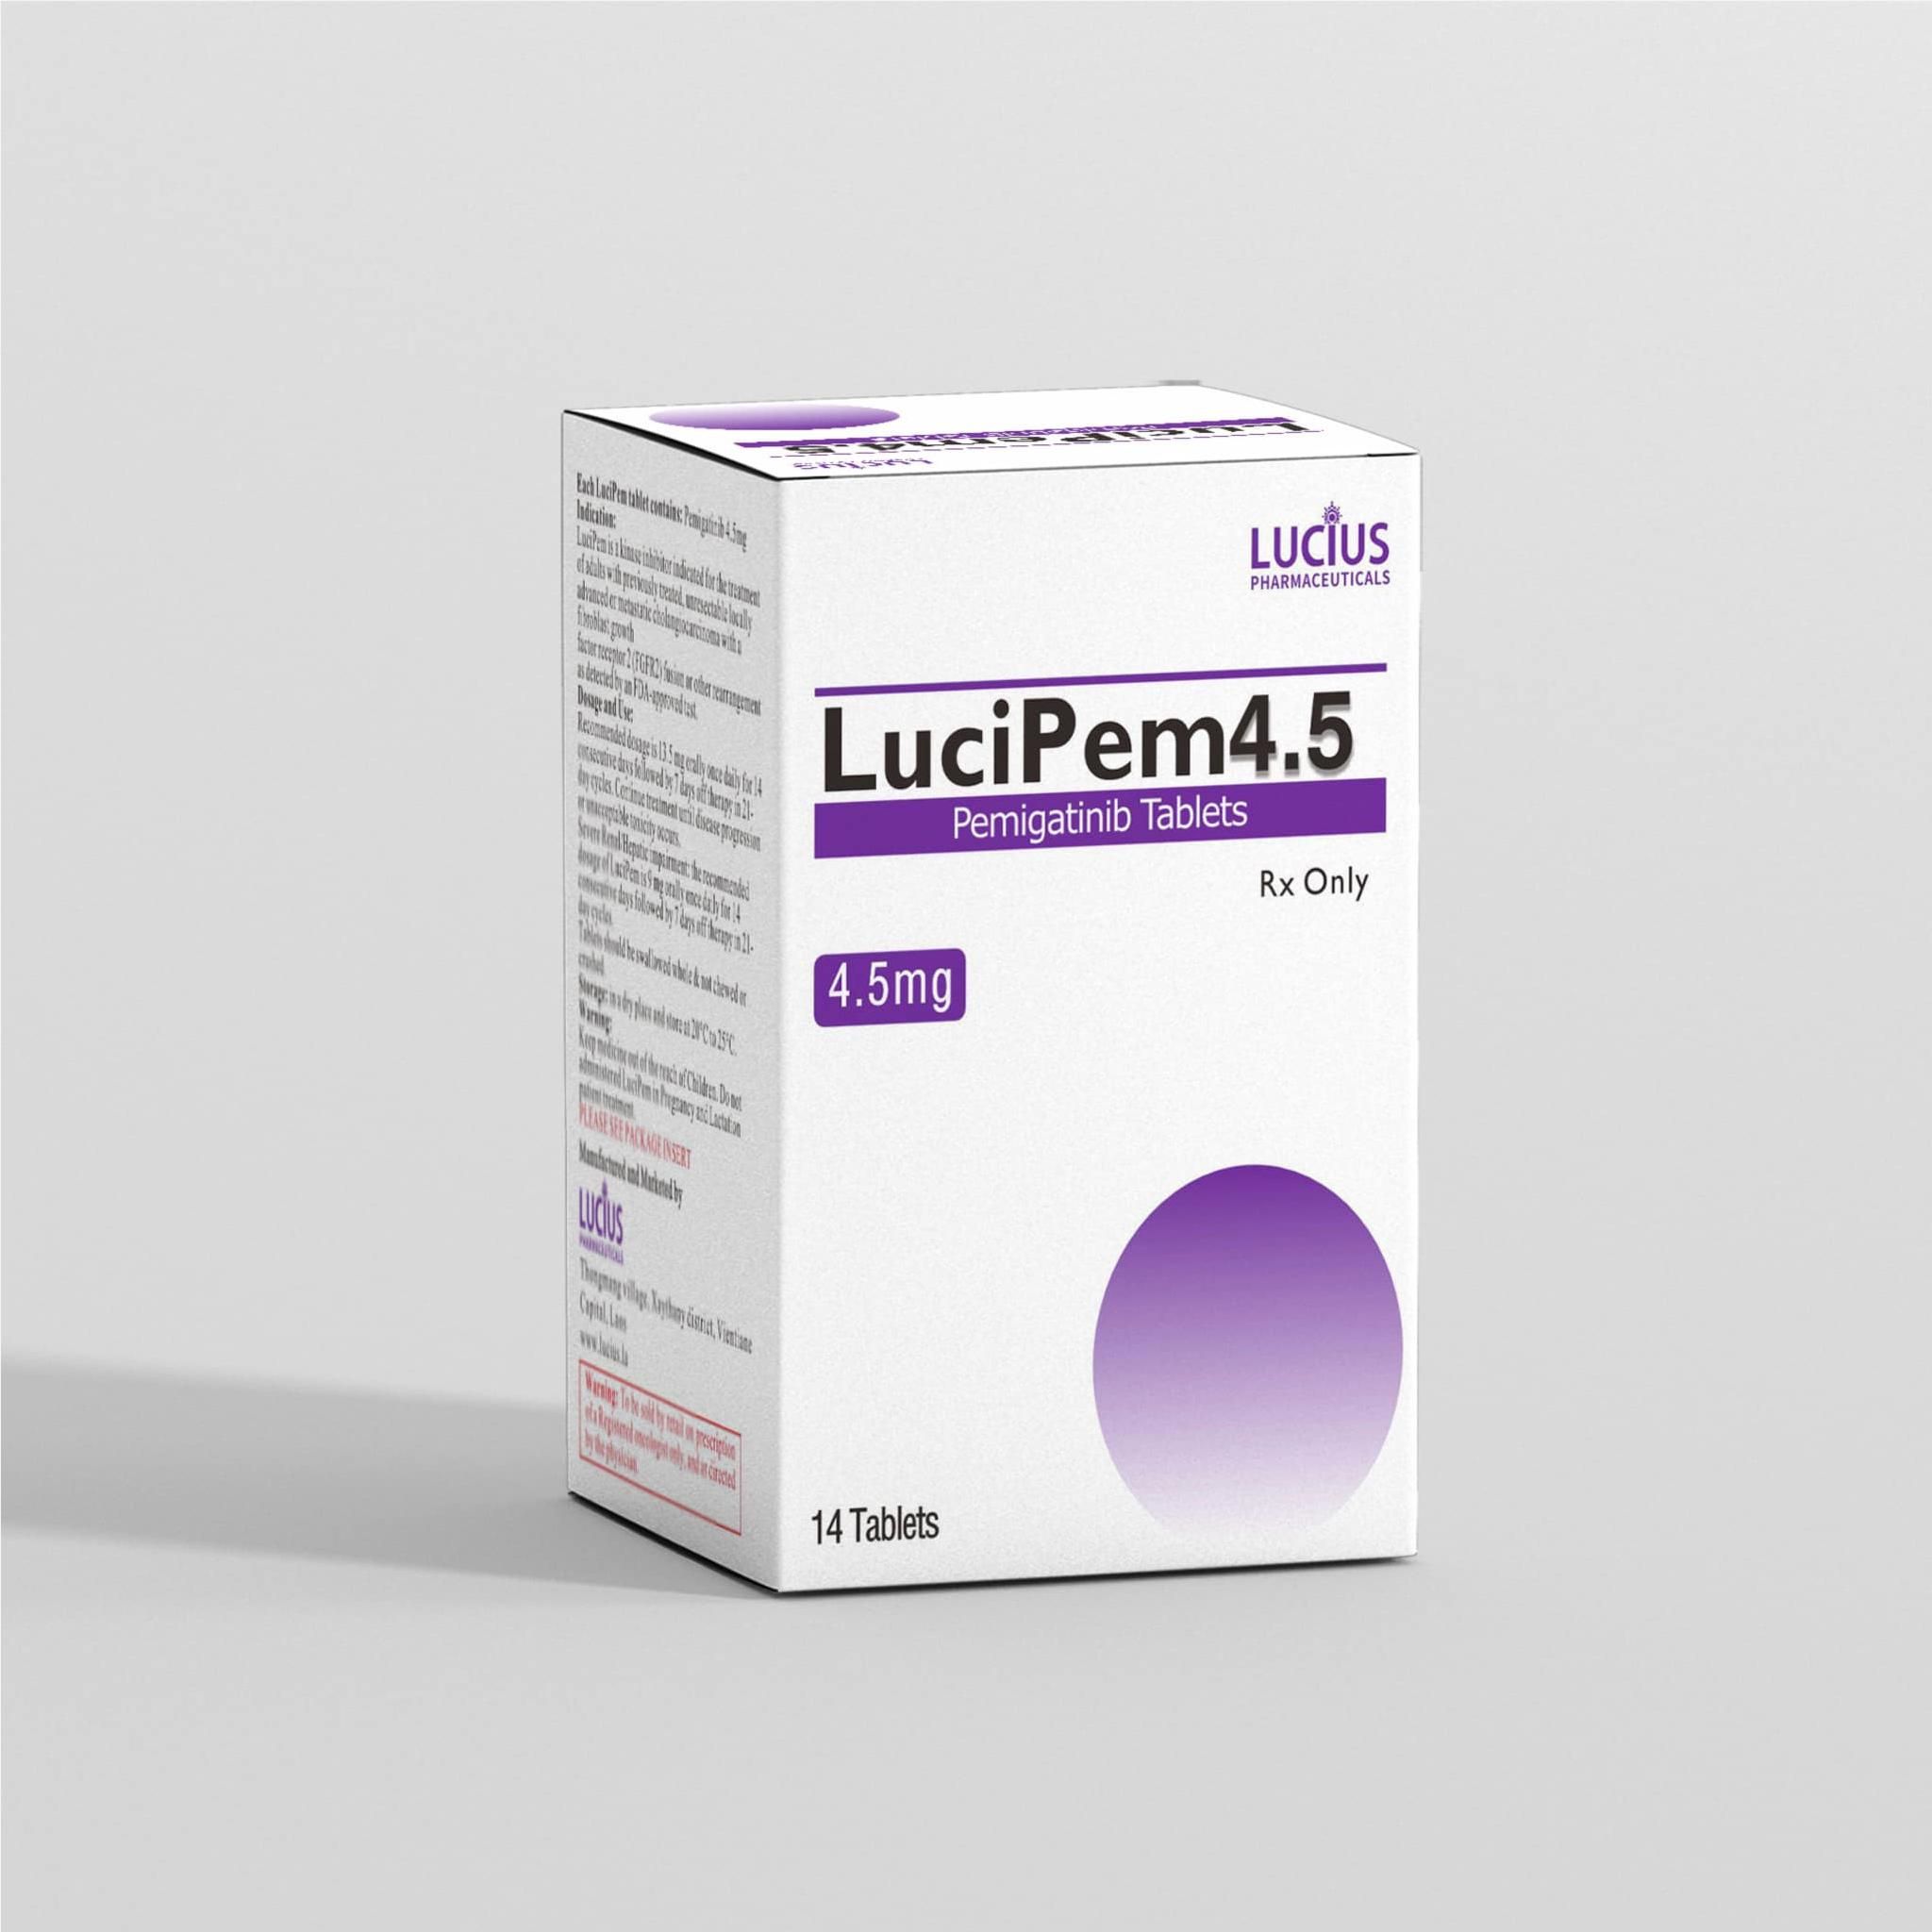 Thuốc Lucipem Pemigatinib 4.5mg giá bao nhiêu mua ở đâu?